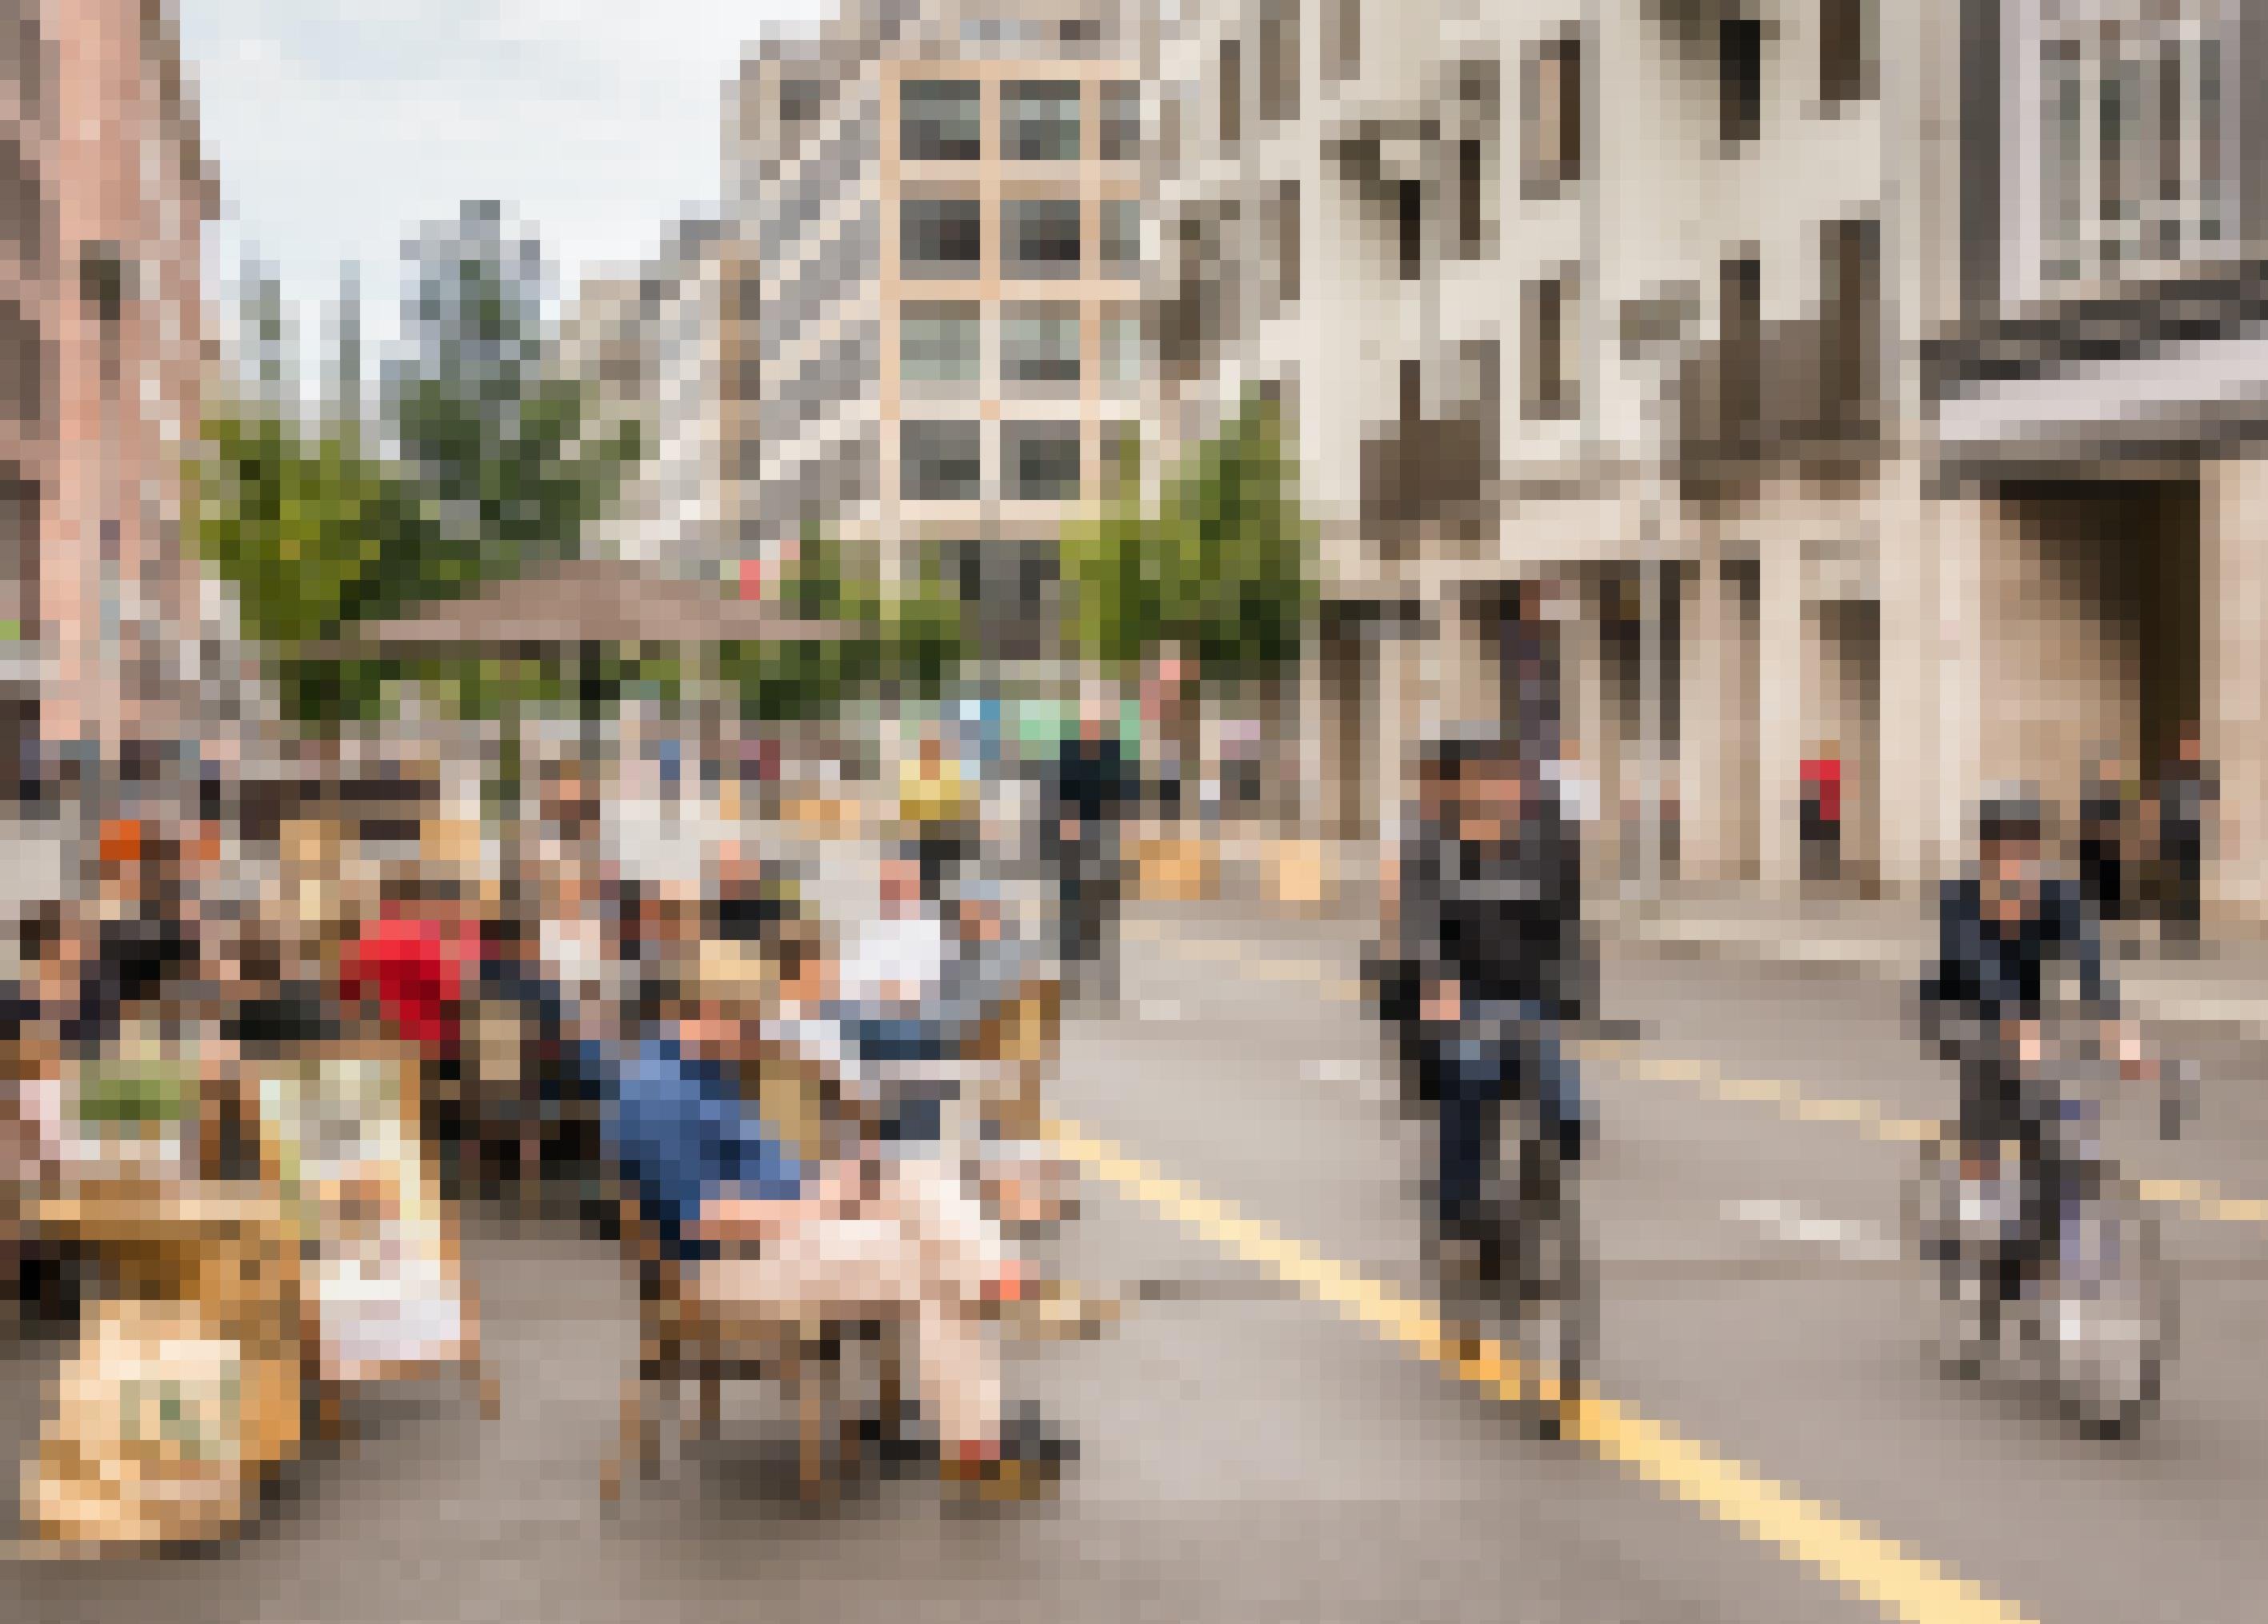 Am Straßenrand sitzen Menschen in einem Café. Radfahrer sind auf der Fahrbahn unterwegs, die für Autos gesperrt ist